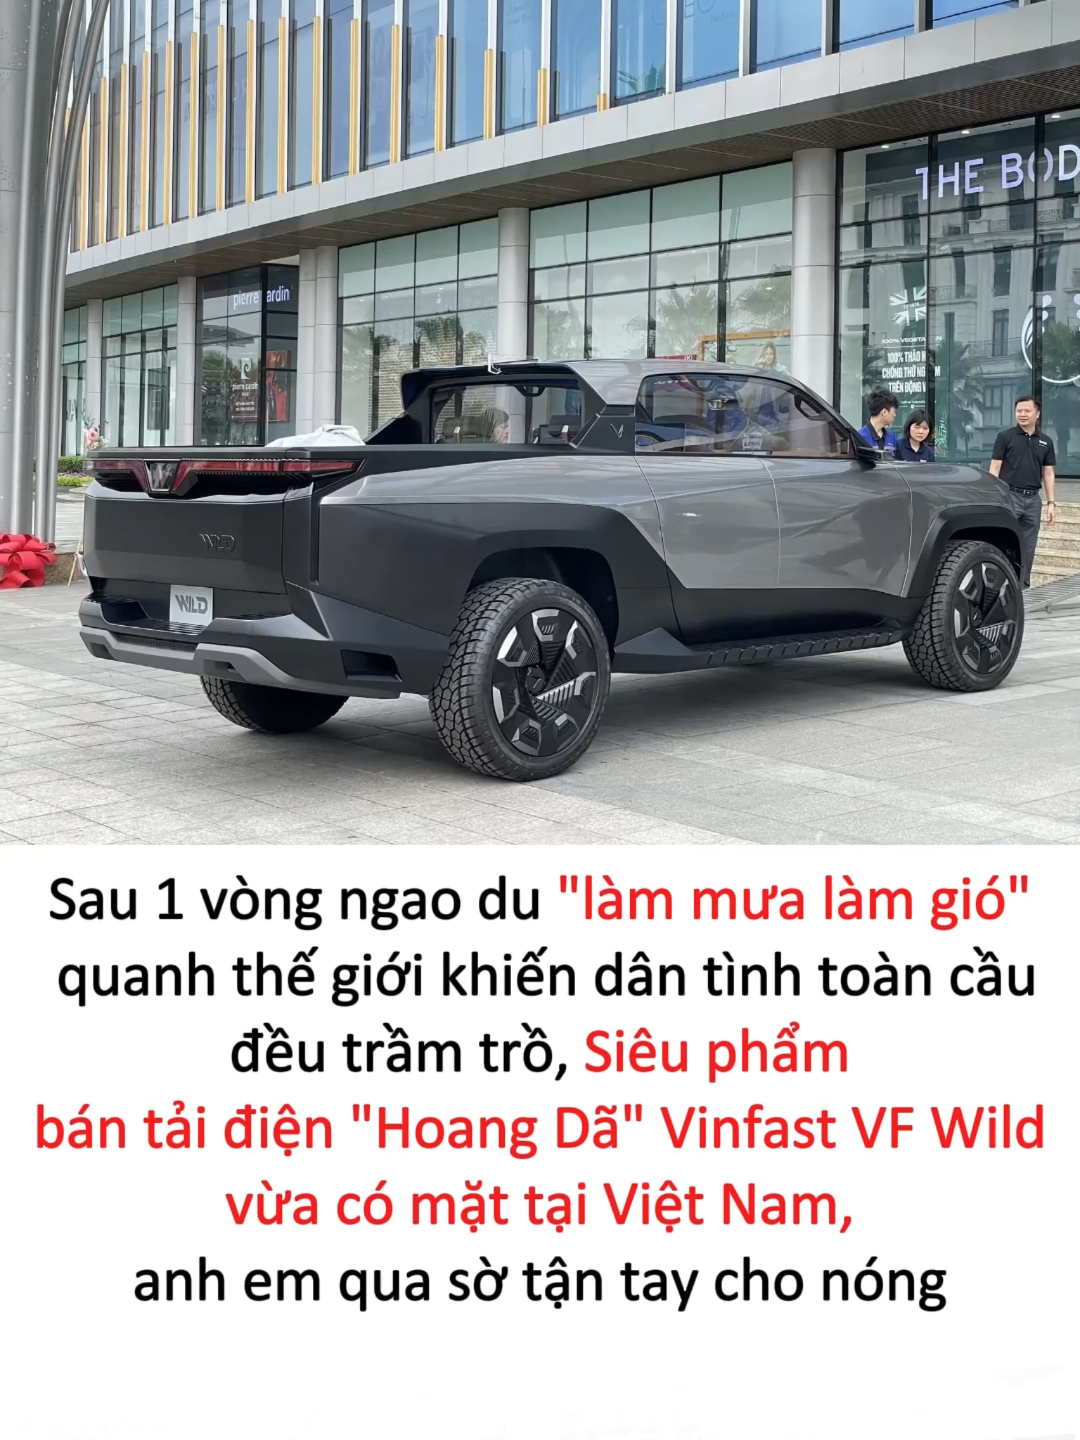 Siêu phẩm bán tải điện VinFast VF WILD đã có mặt tại Hà Nội #tapchisieuxe #vinfast #vcreator